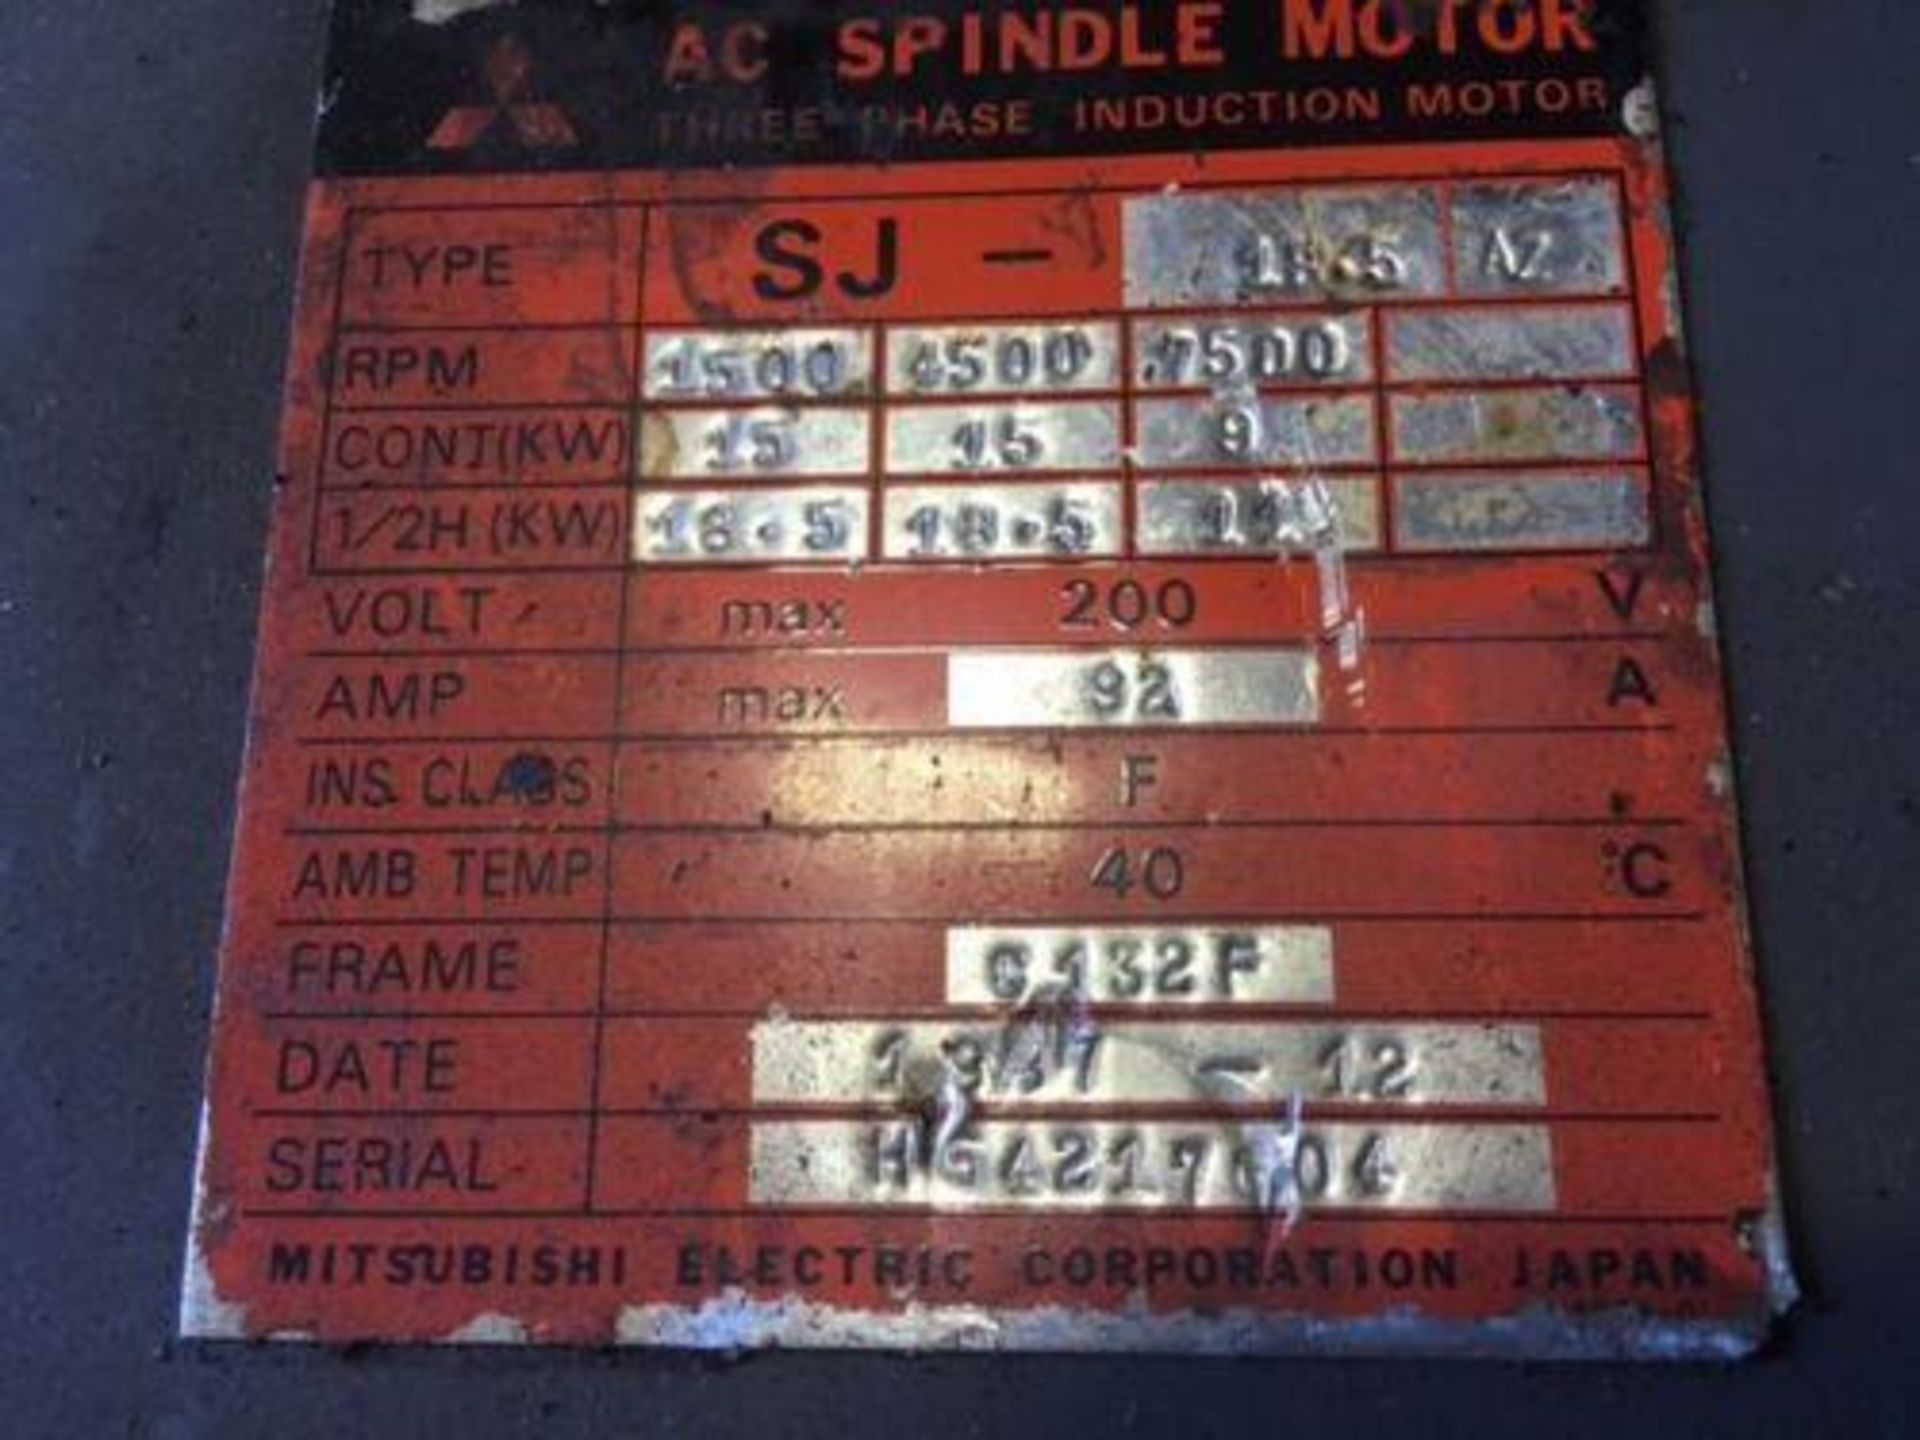 Mitsubishi AC Spindle Motor, 9/18.5 kW, # SJ-18.5AZ, 1500-7500 RPM - Image 5 of 5